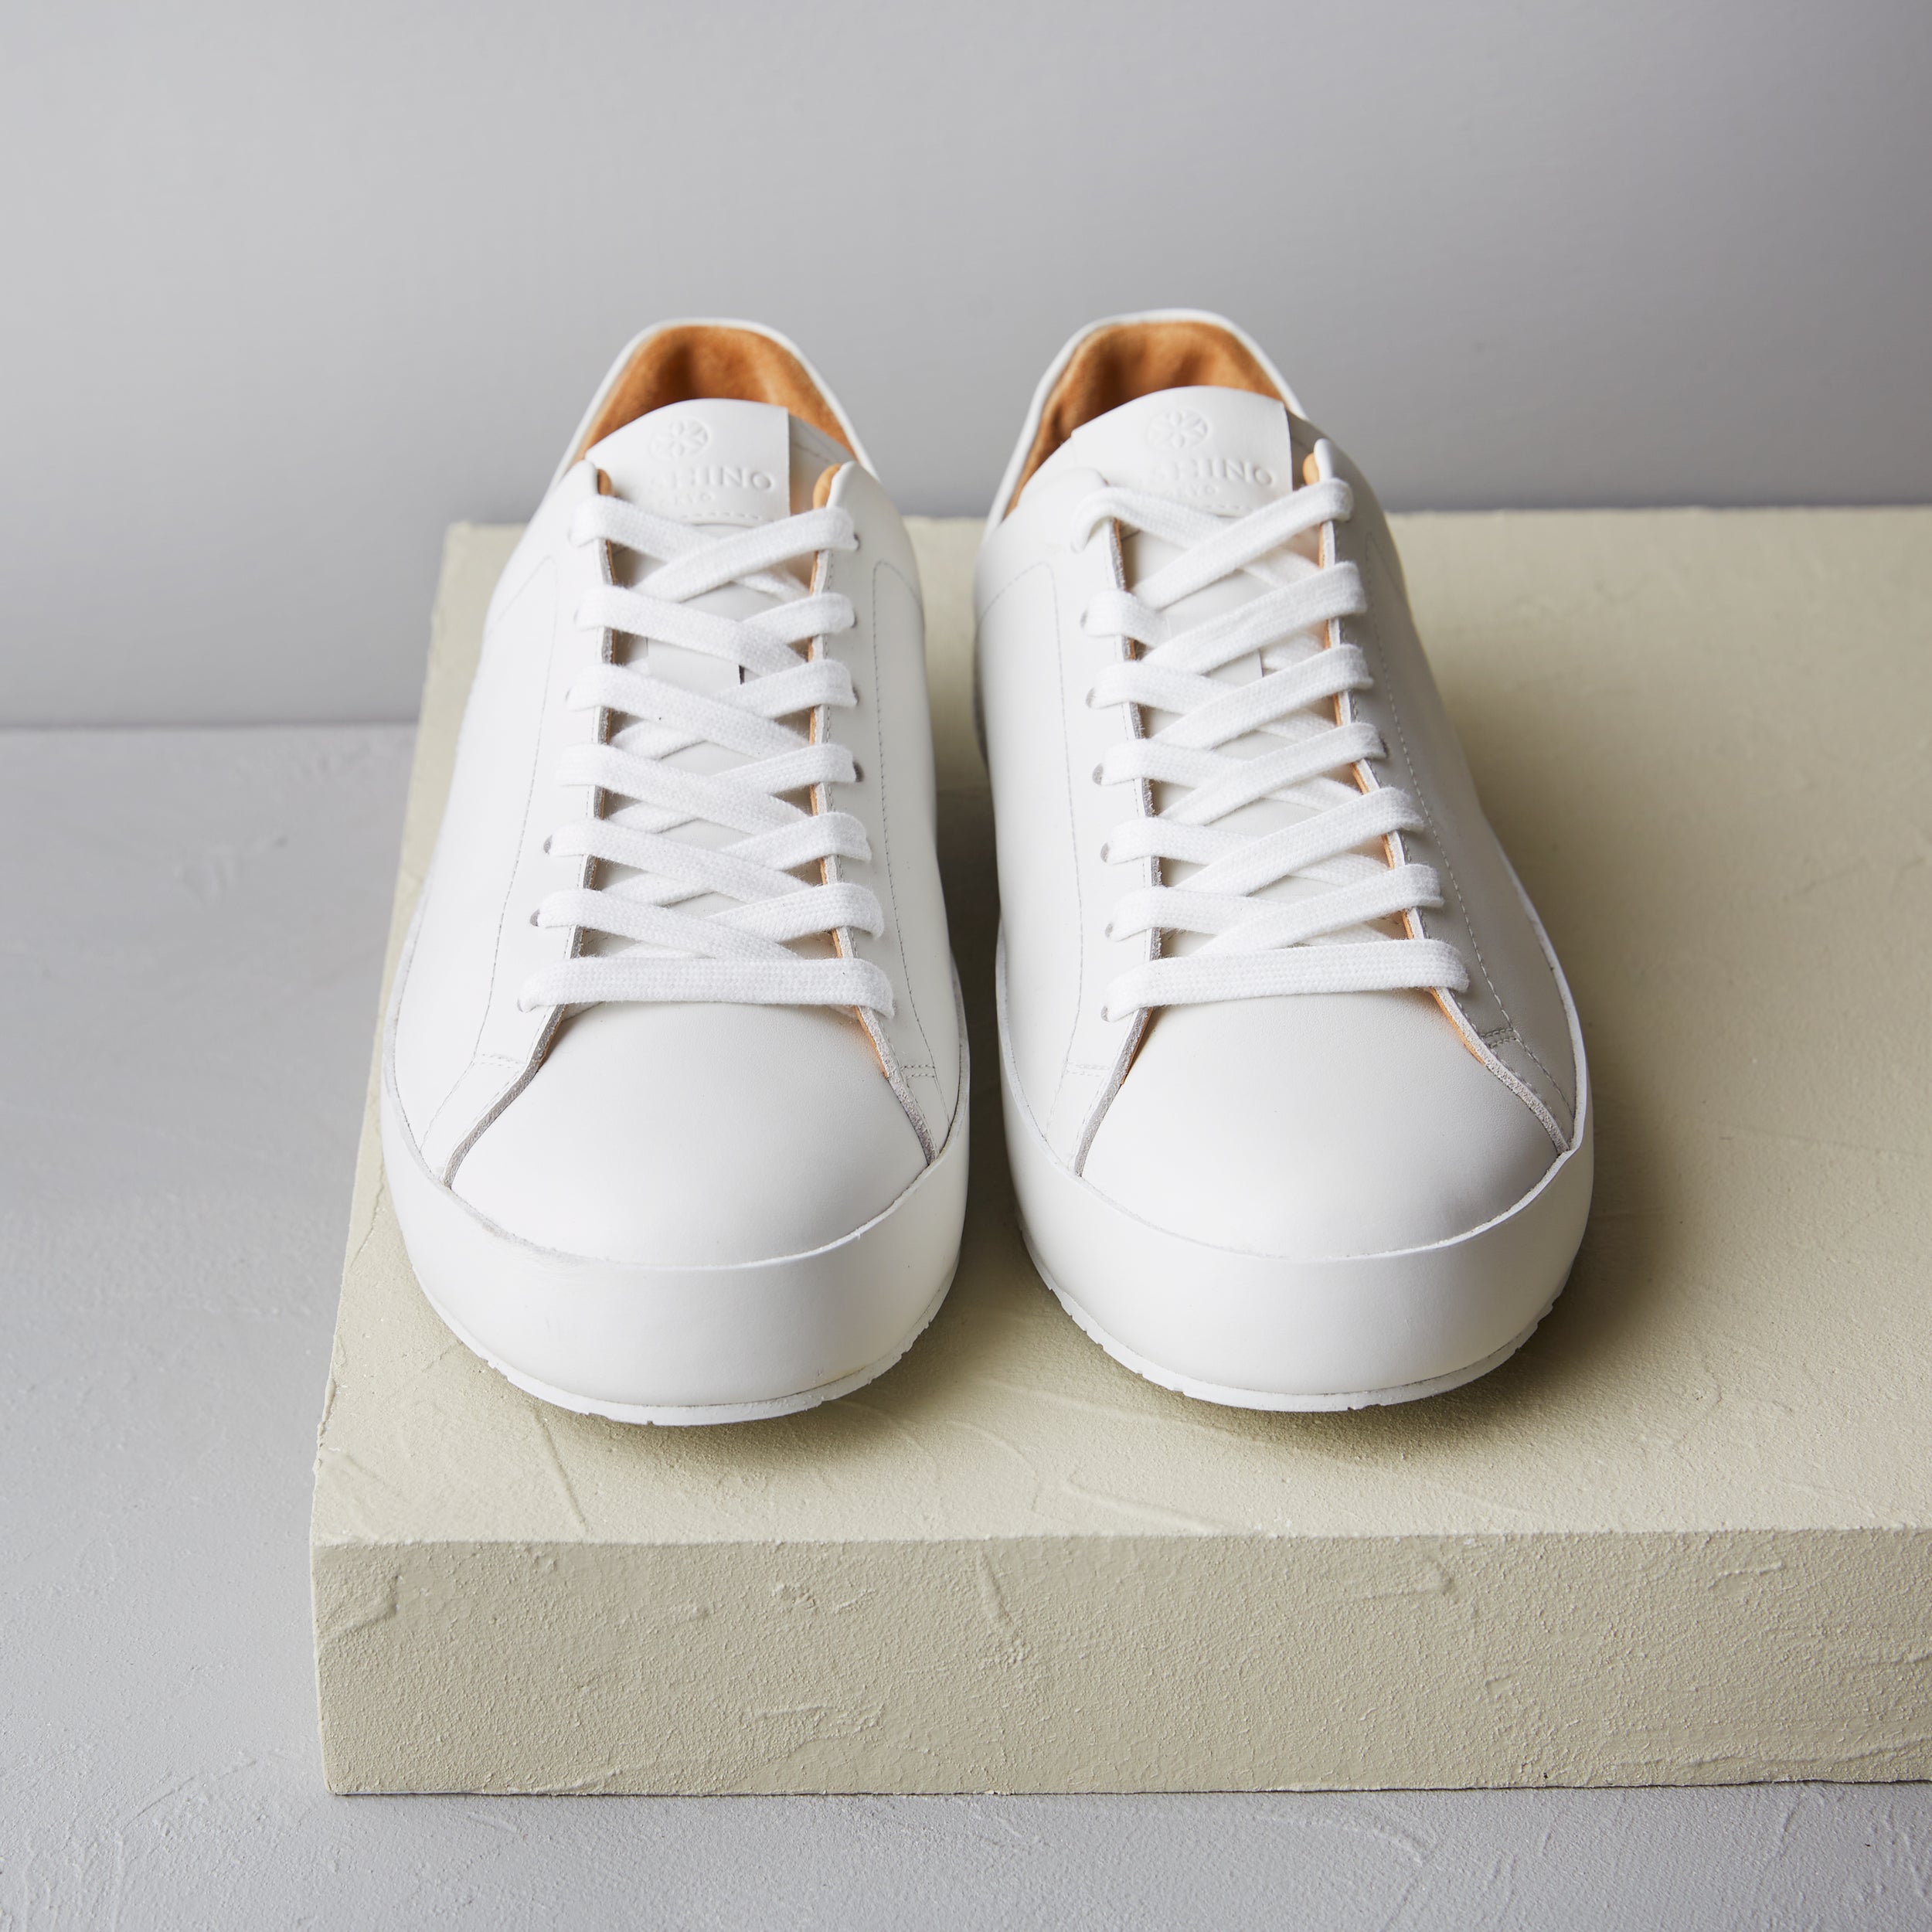 [men's] Liberte - low-top sneakers - white calfskin